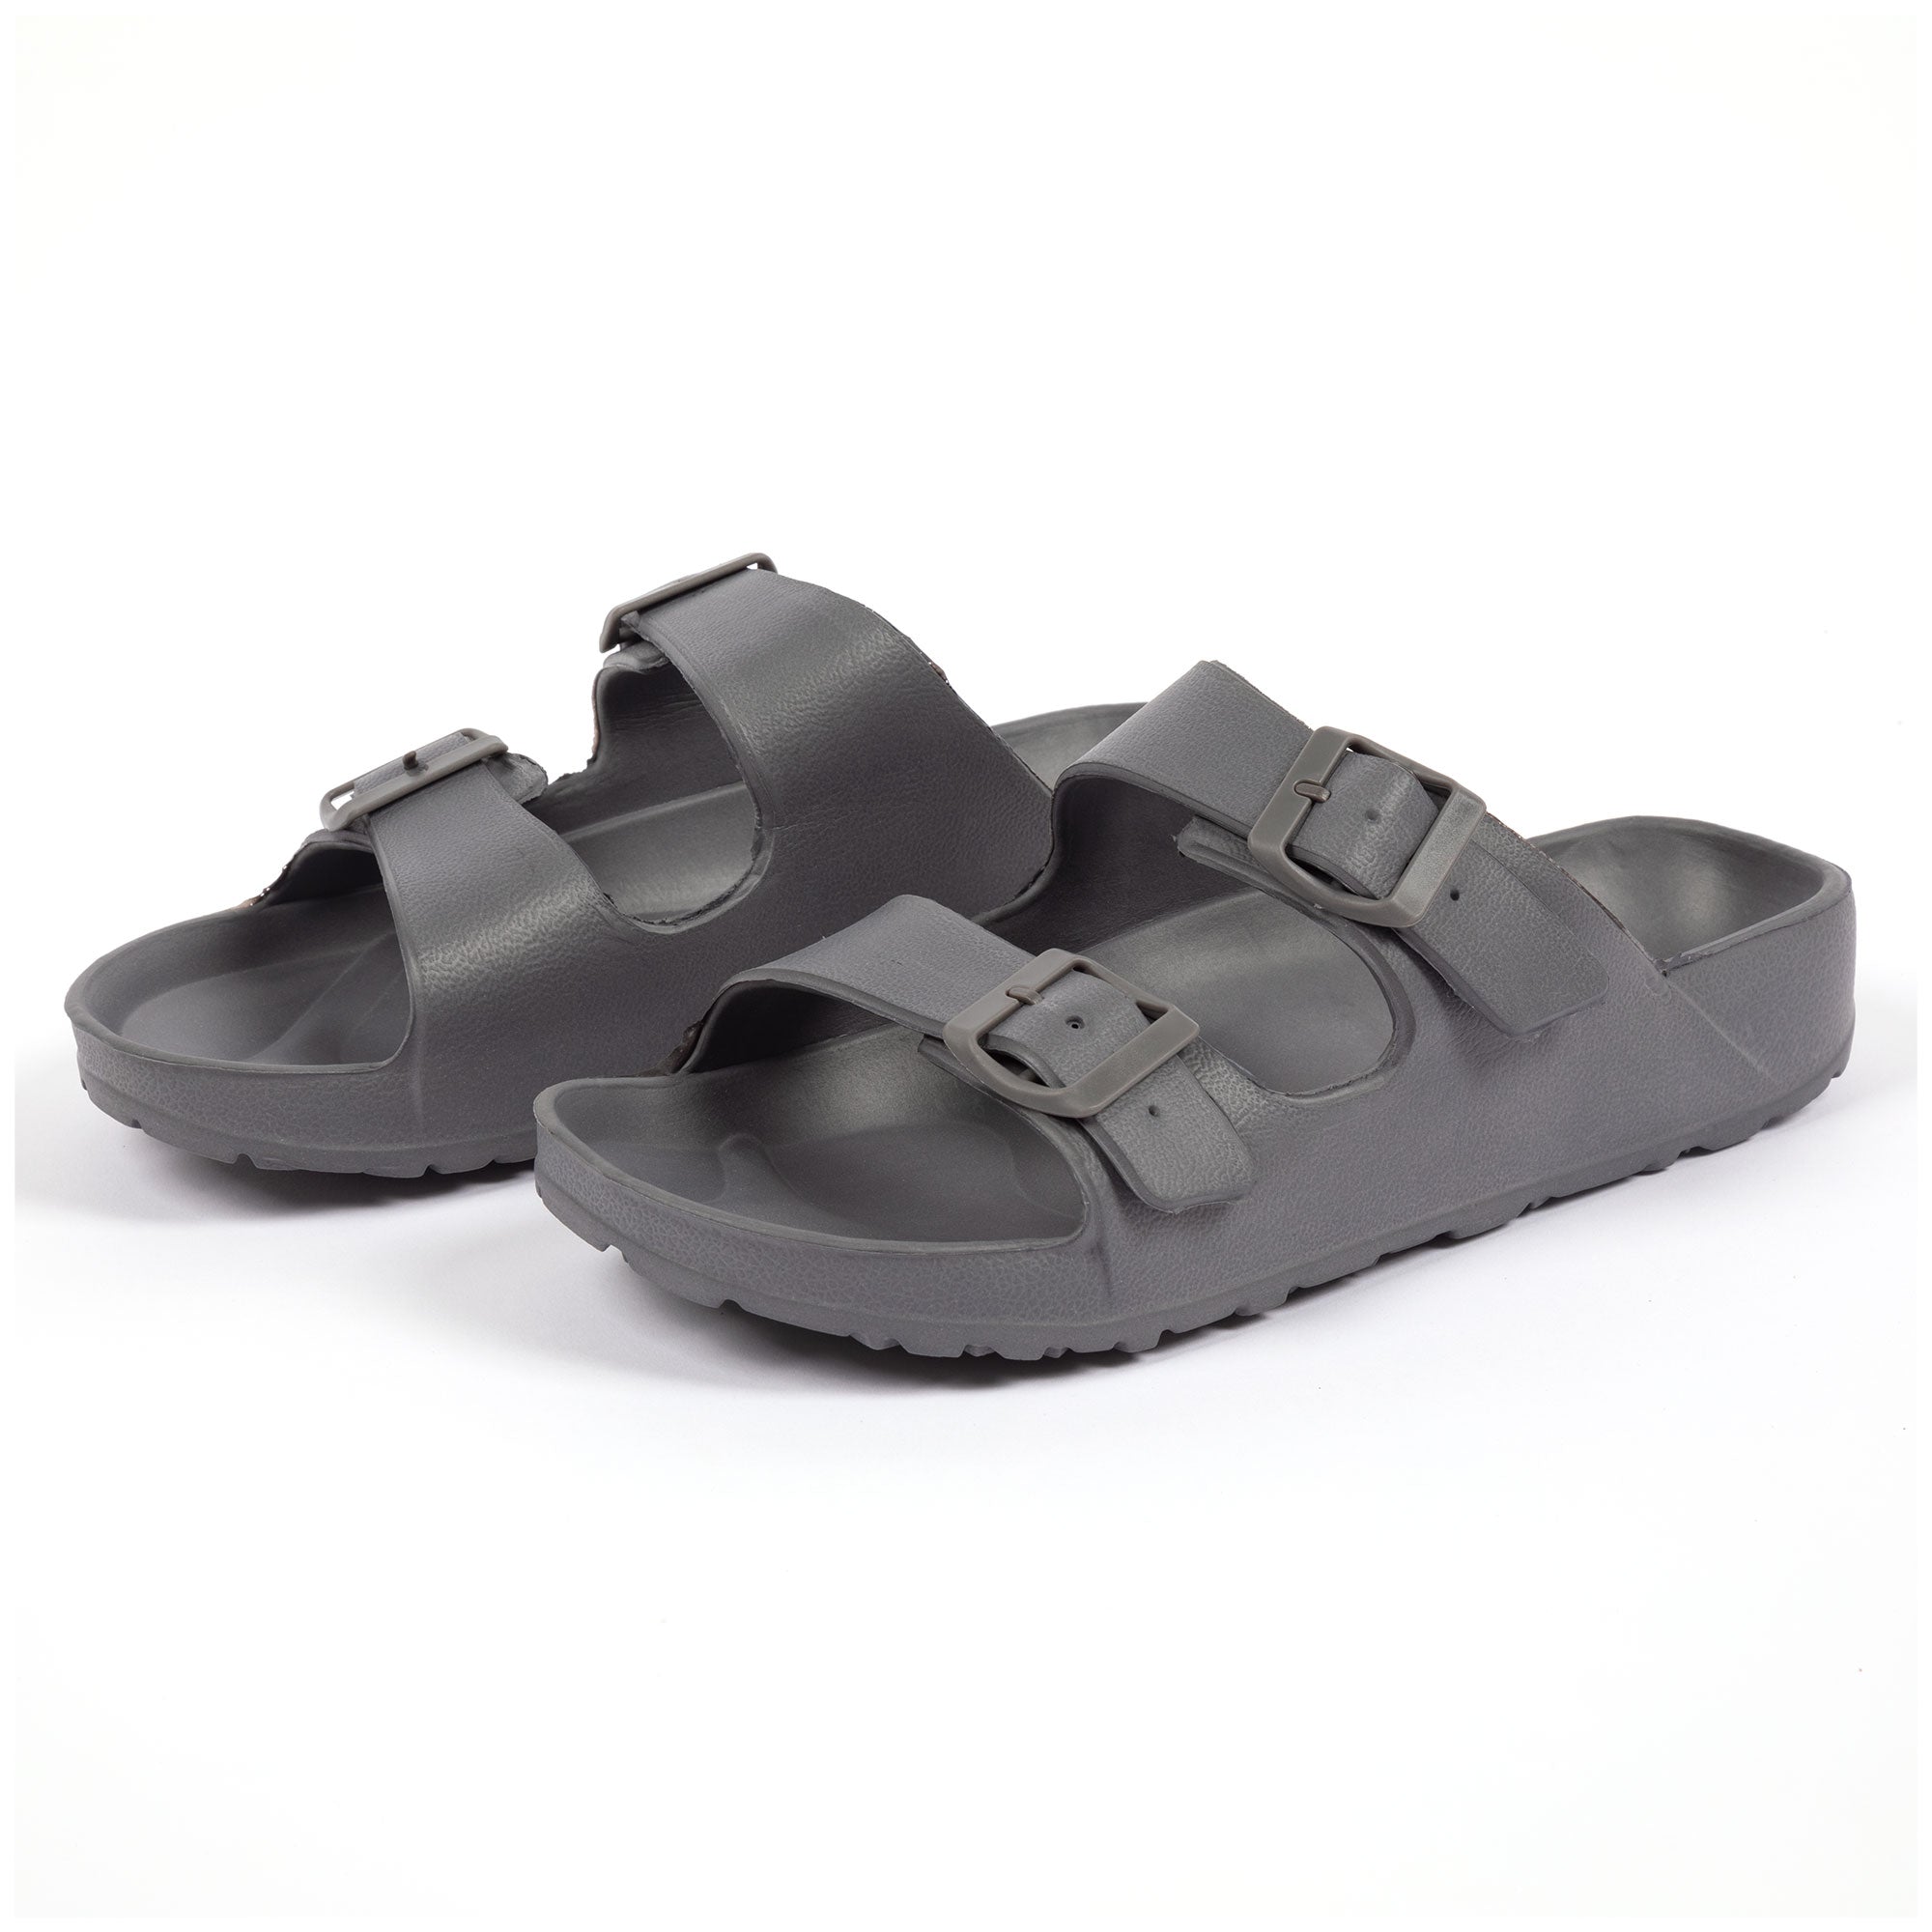 Men's Double Buckle Slide Sandals - Gray - 9